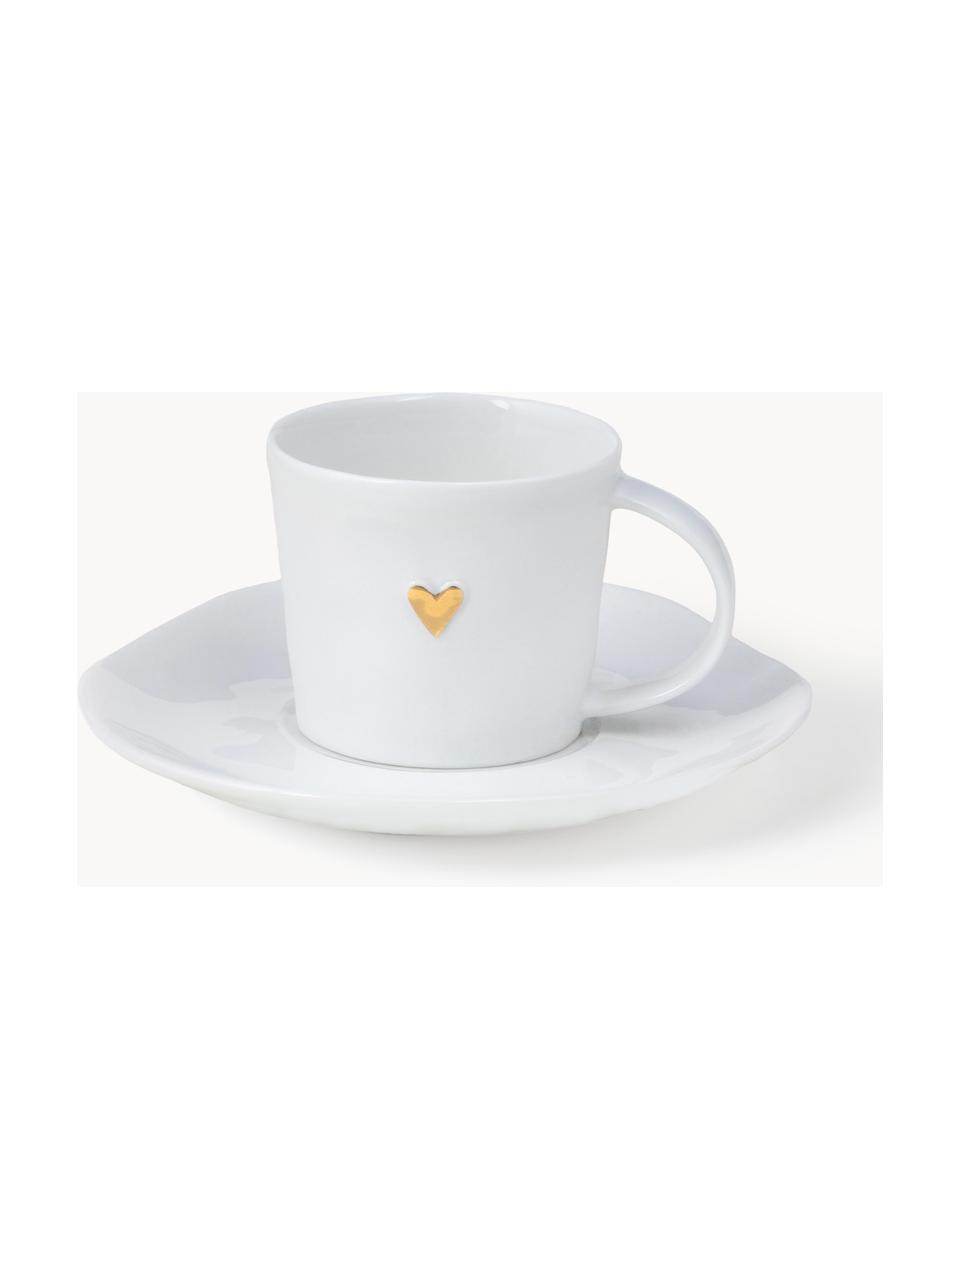 Espressotasse Heart mit Untertasse aus Porzellan, Porzellan, glasiert, Weiss, Goldfarben, Ø 6 x H 5 cm, 80 ml